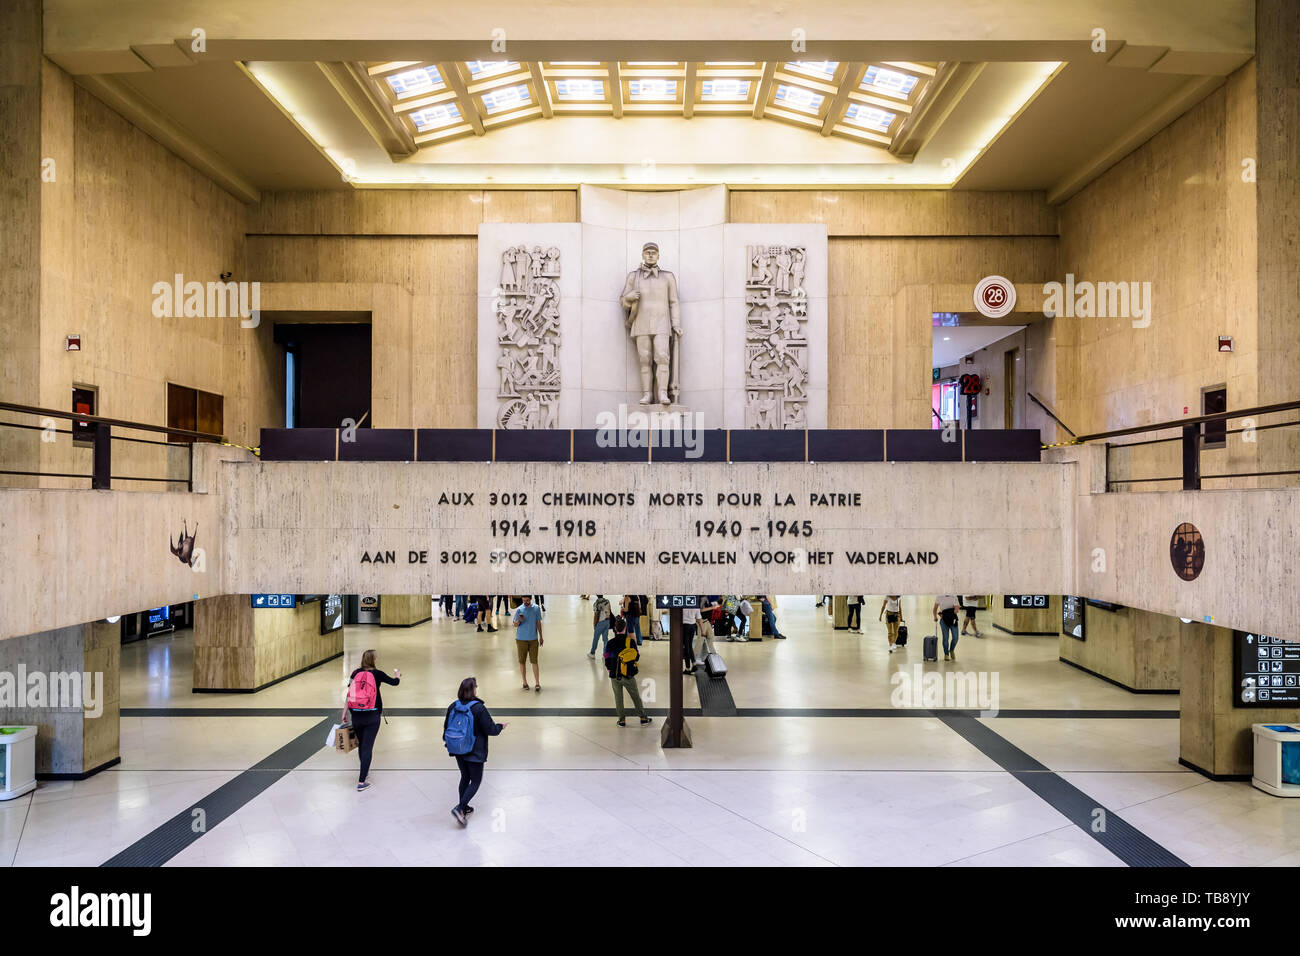 Ein Denkmal in der bahnhofshalle Hauptbahnhof Brüssel im Speicher der Eisenbahn Männer und Frauen tot für Belgien installiert während der beiden Weltkriege. Stockfoto